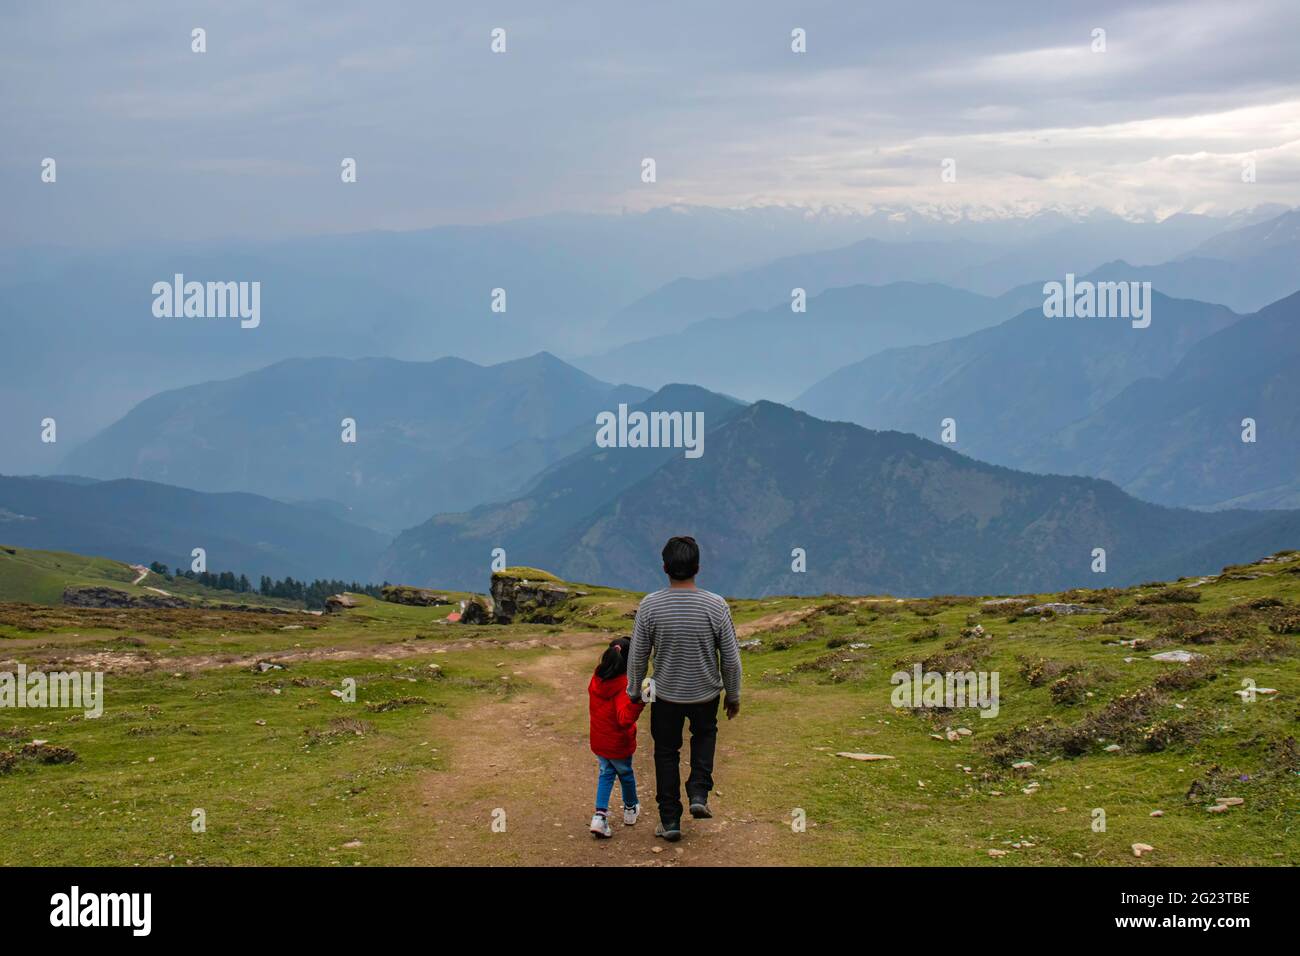 Vater hält die Hand ihres kleinen Mädchens, das sie von den Hügeln mit einem wunderschönen Himalaya-Gebirge vor sich herunternimmt. Stockfoto